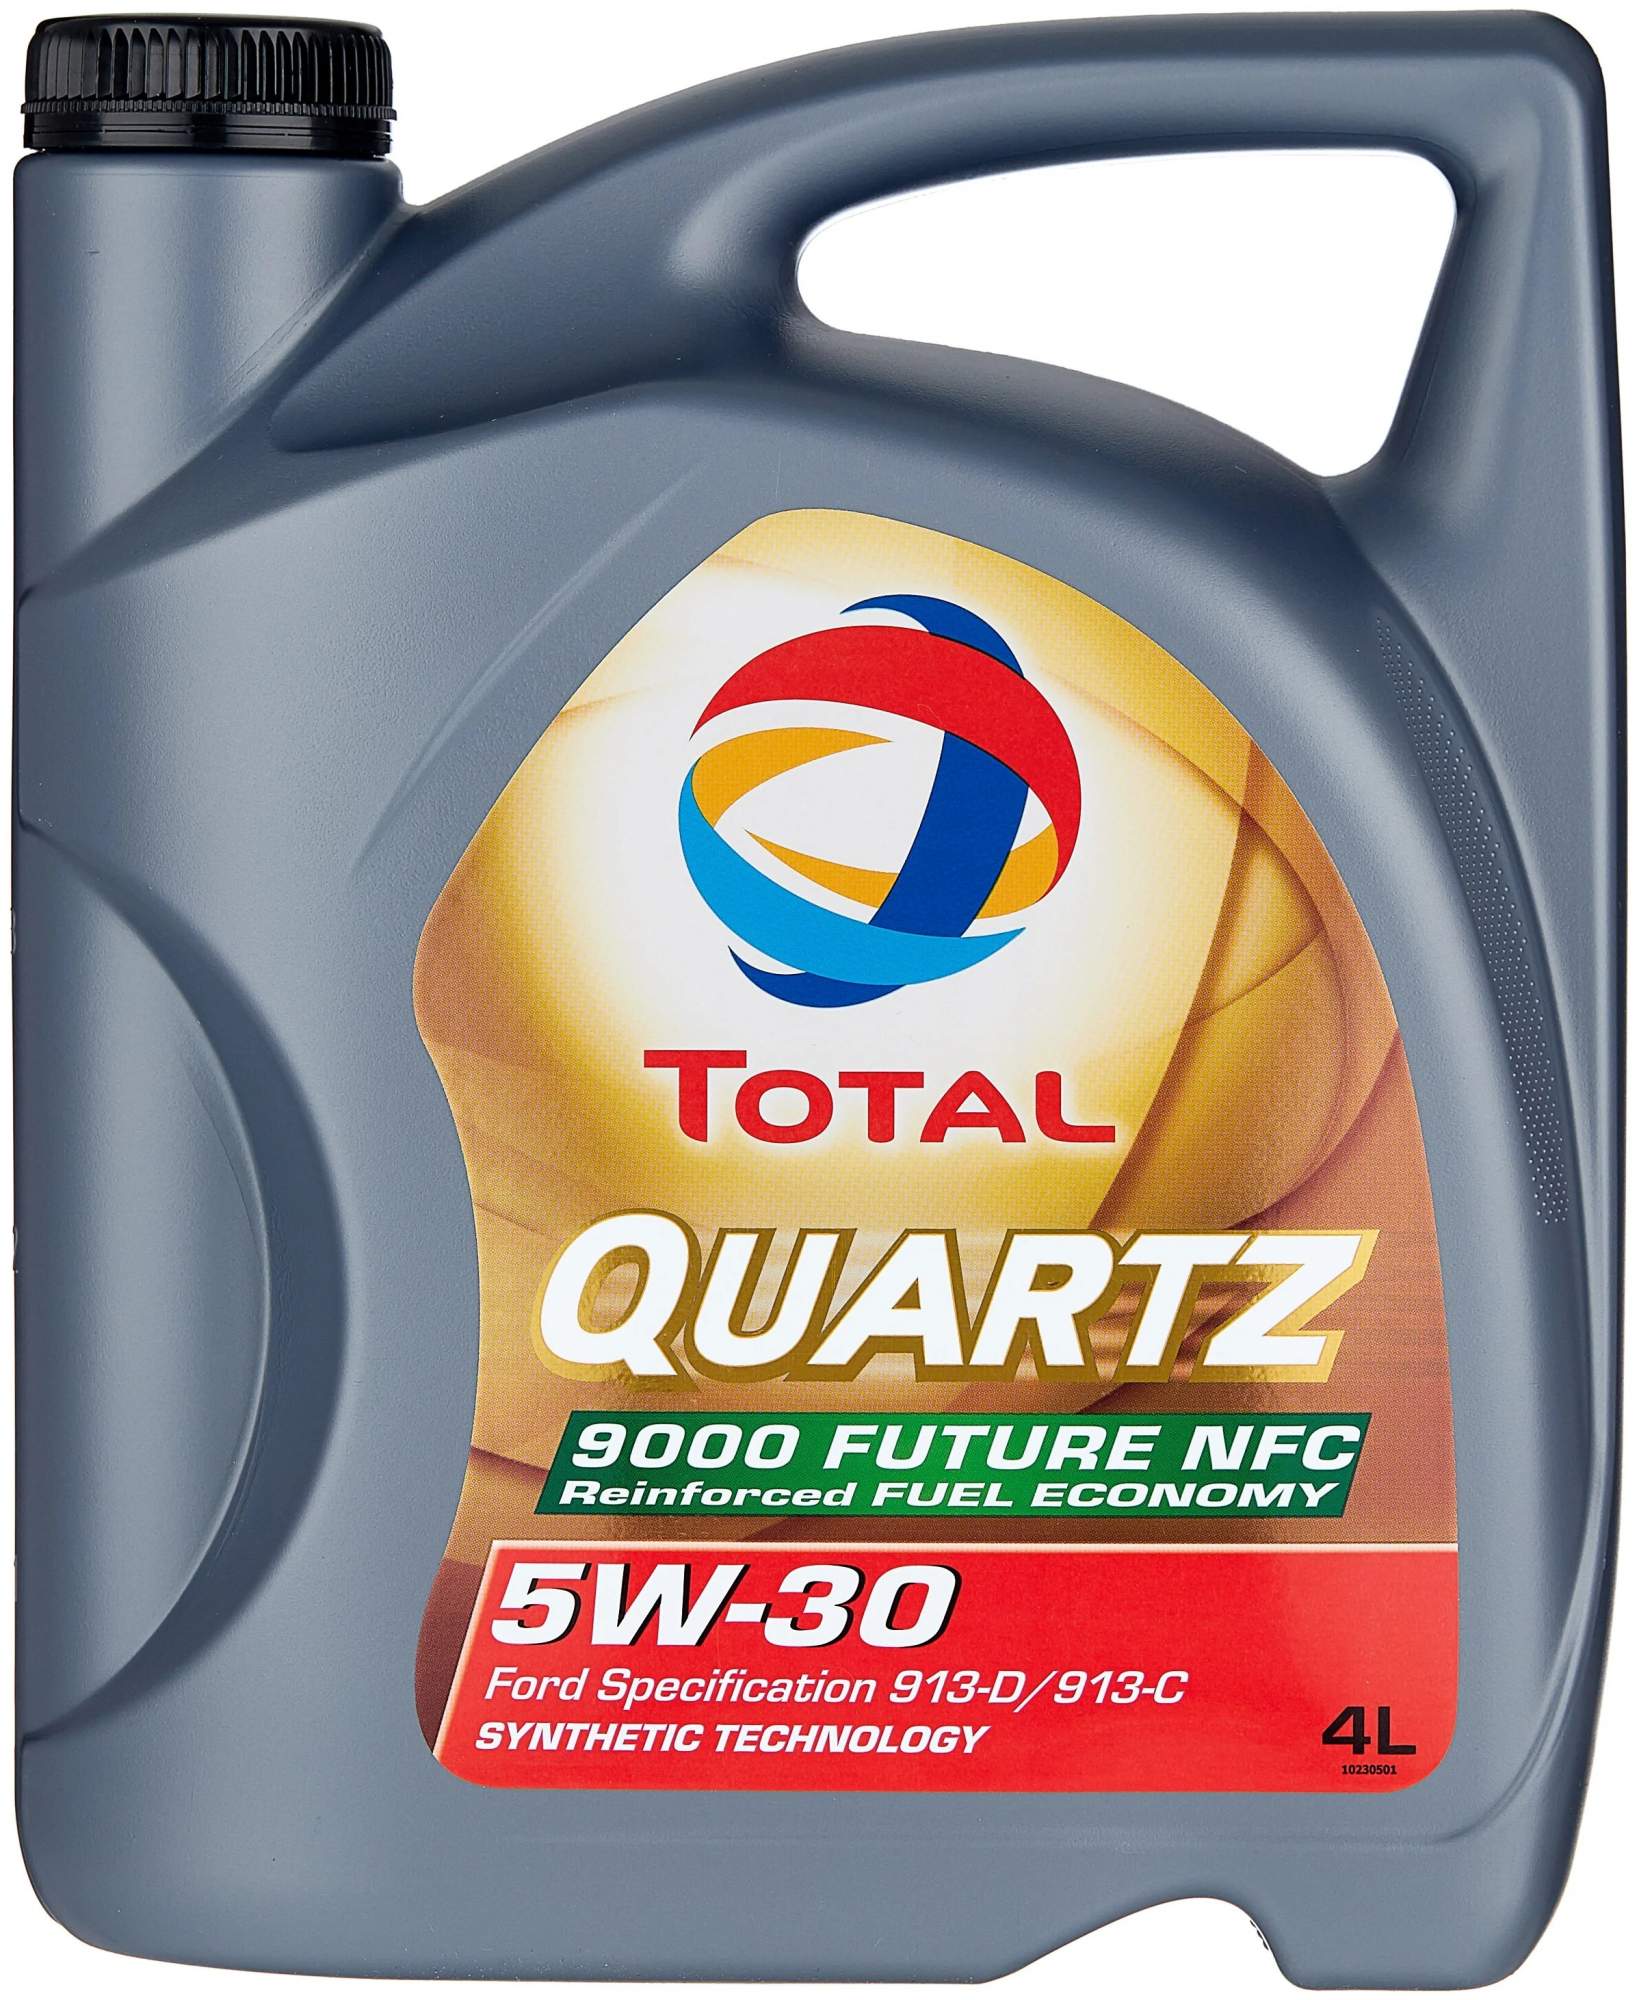 Моторное масло TOTAL Quartz 9000 Future NFC SAE 5w30 4л - купить в Москве, цены на Мегамаркет | 100041165454